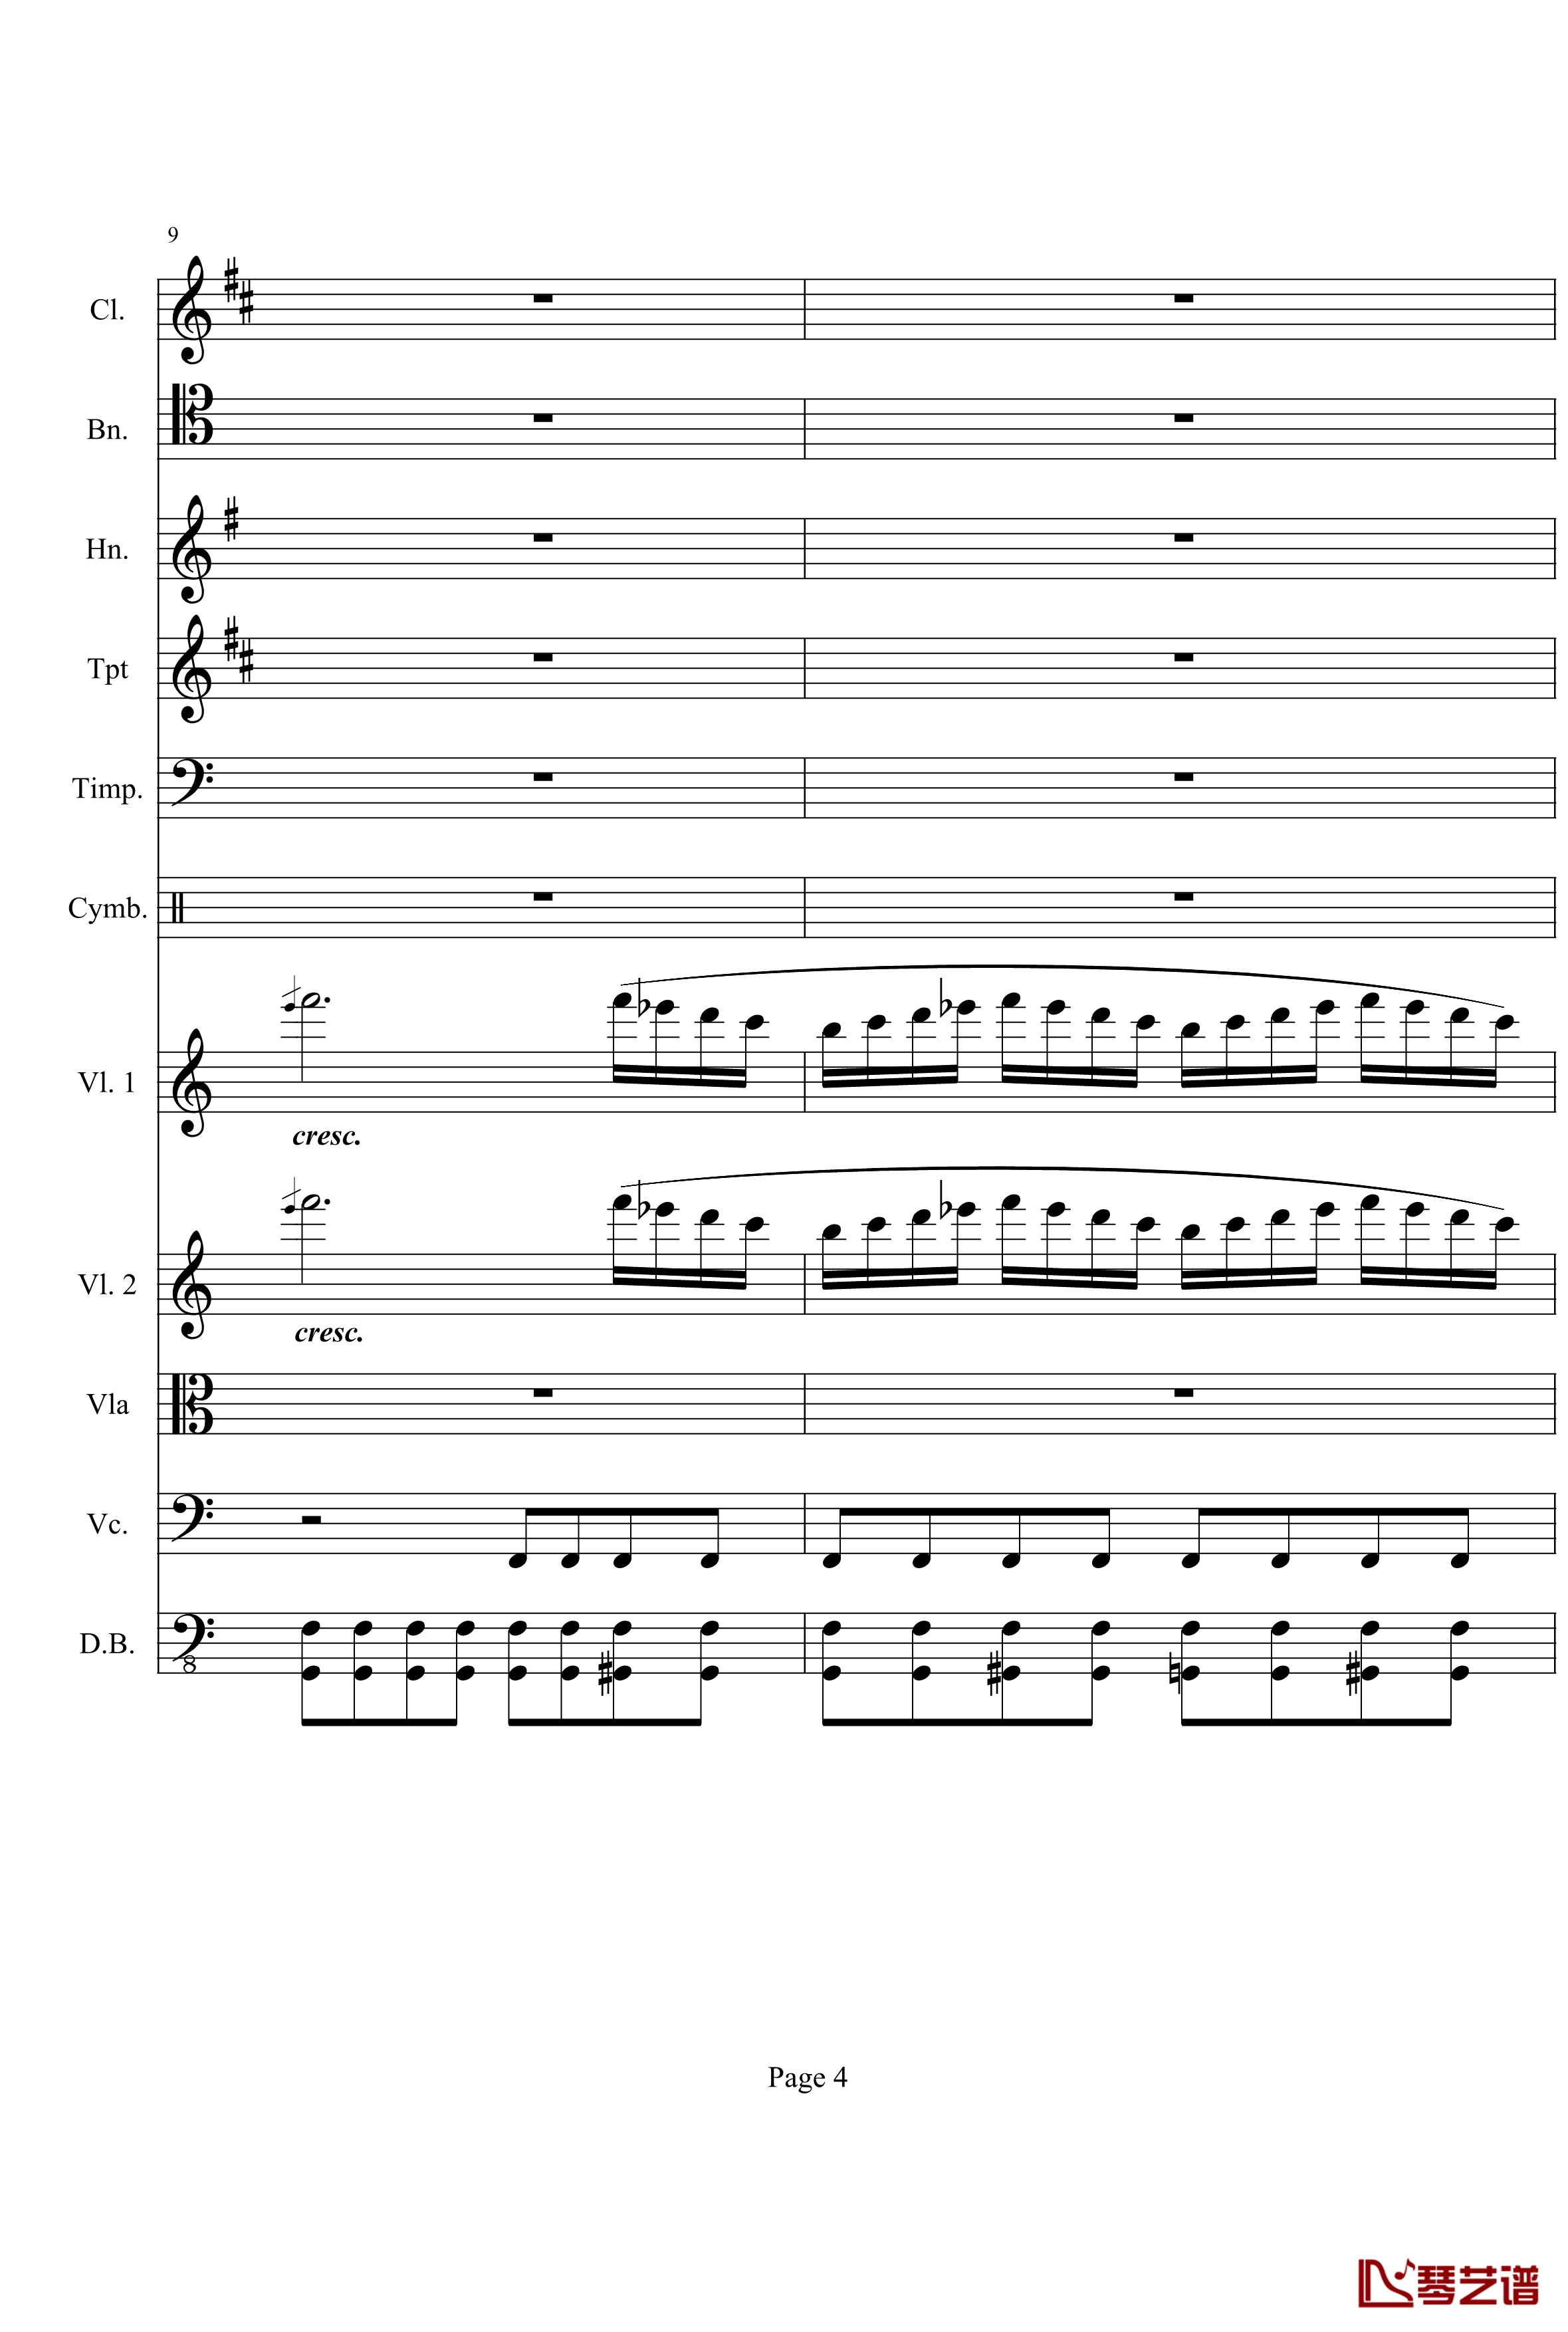 奏鸣曲之交响钢琴谱-第21-Ⅰ-贝多芬-beethoven4